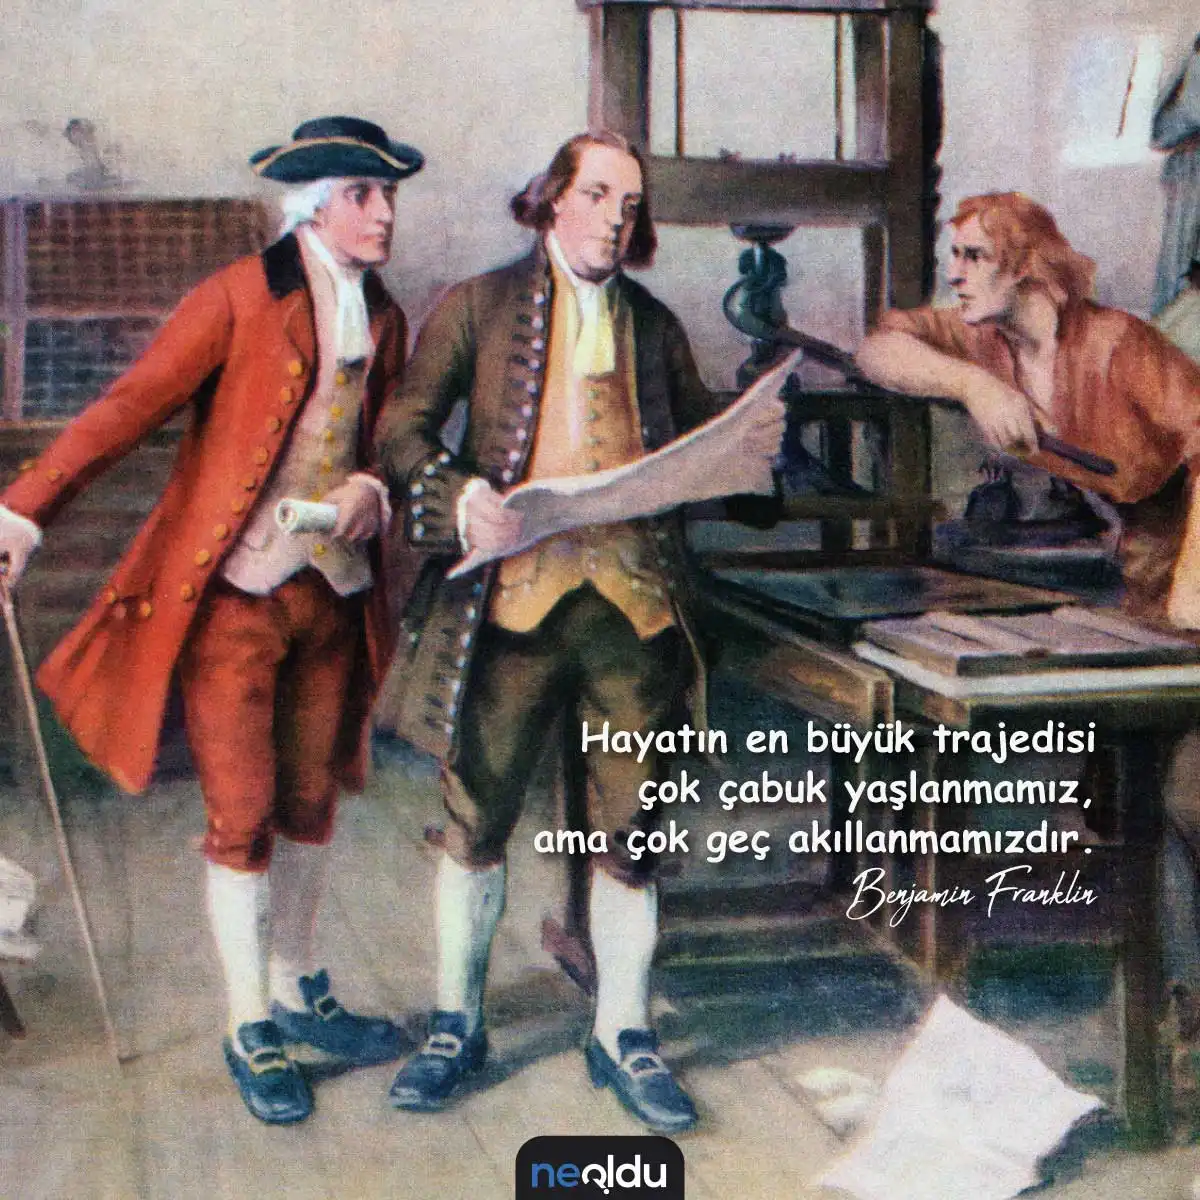 Benjamin Franklin Sözleri